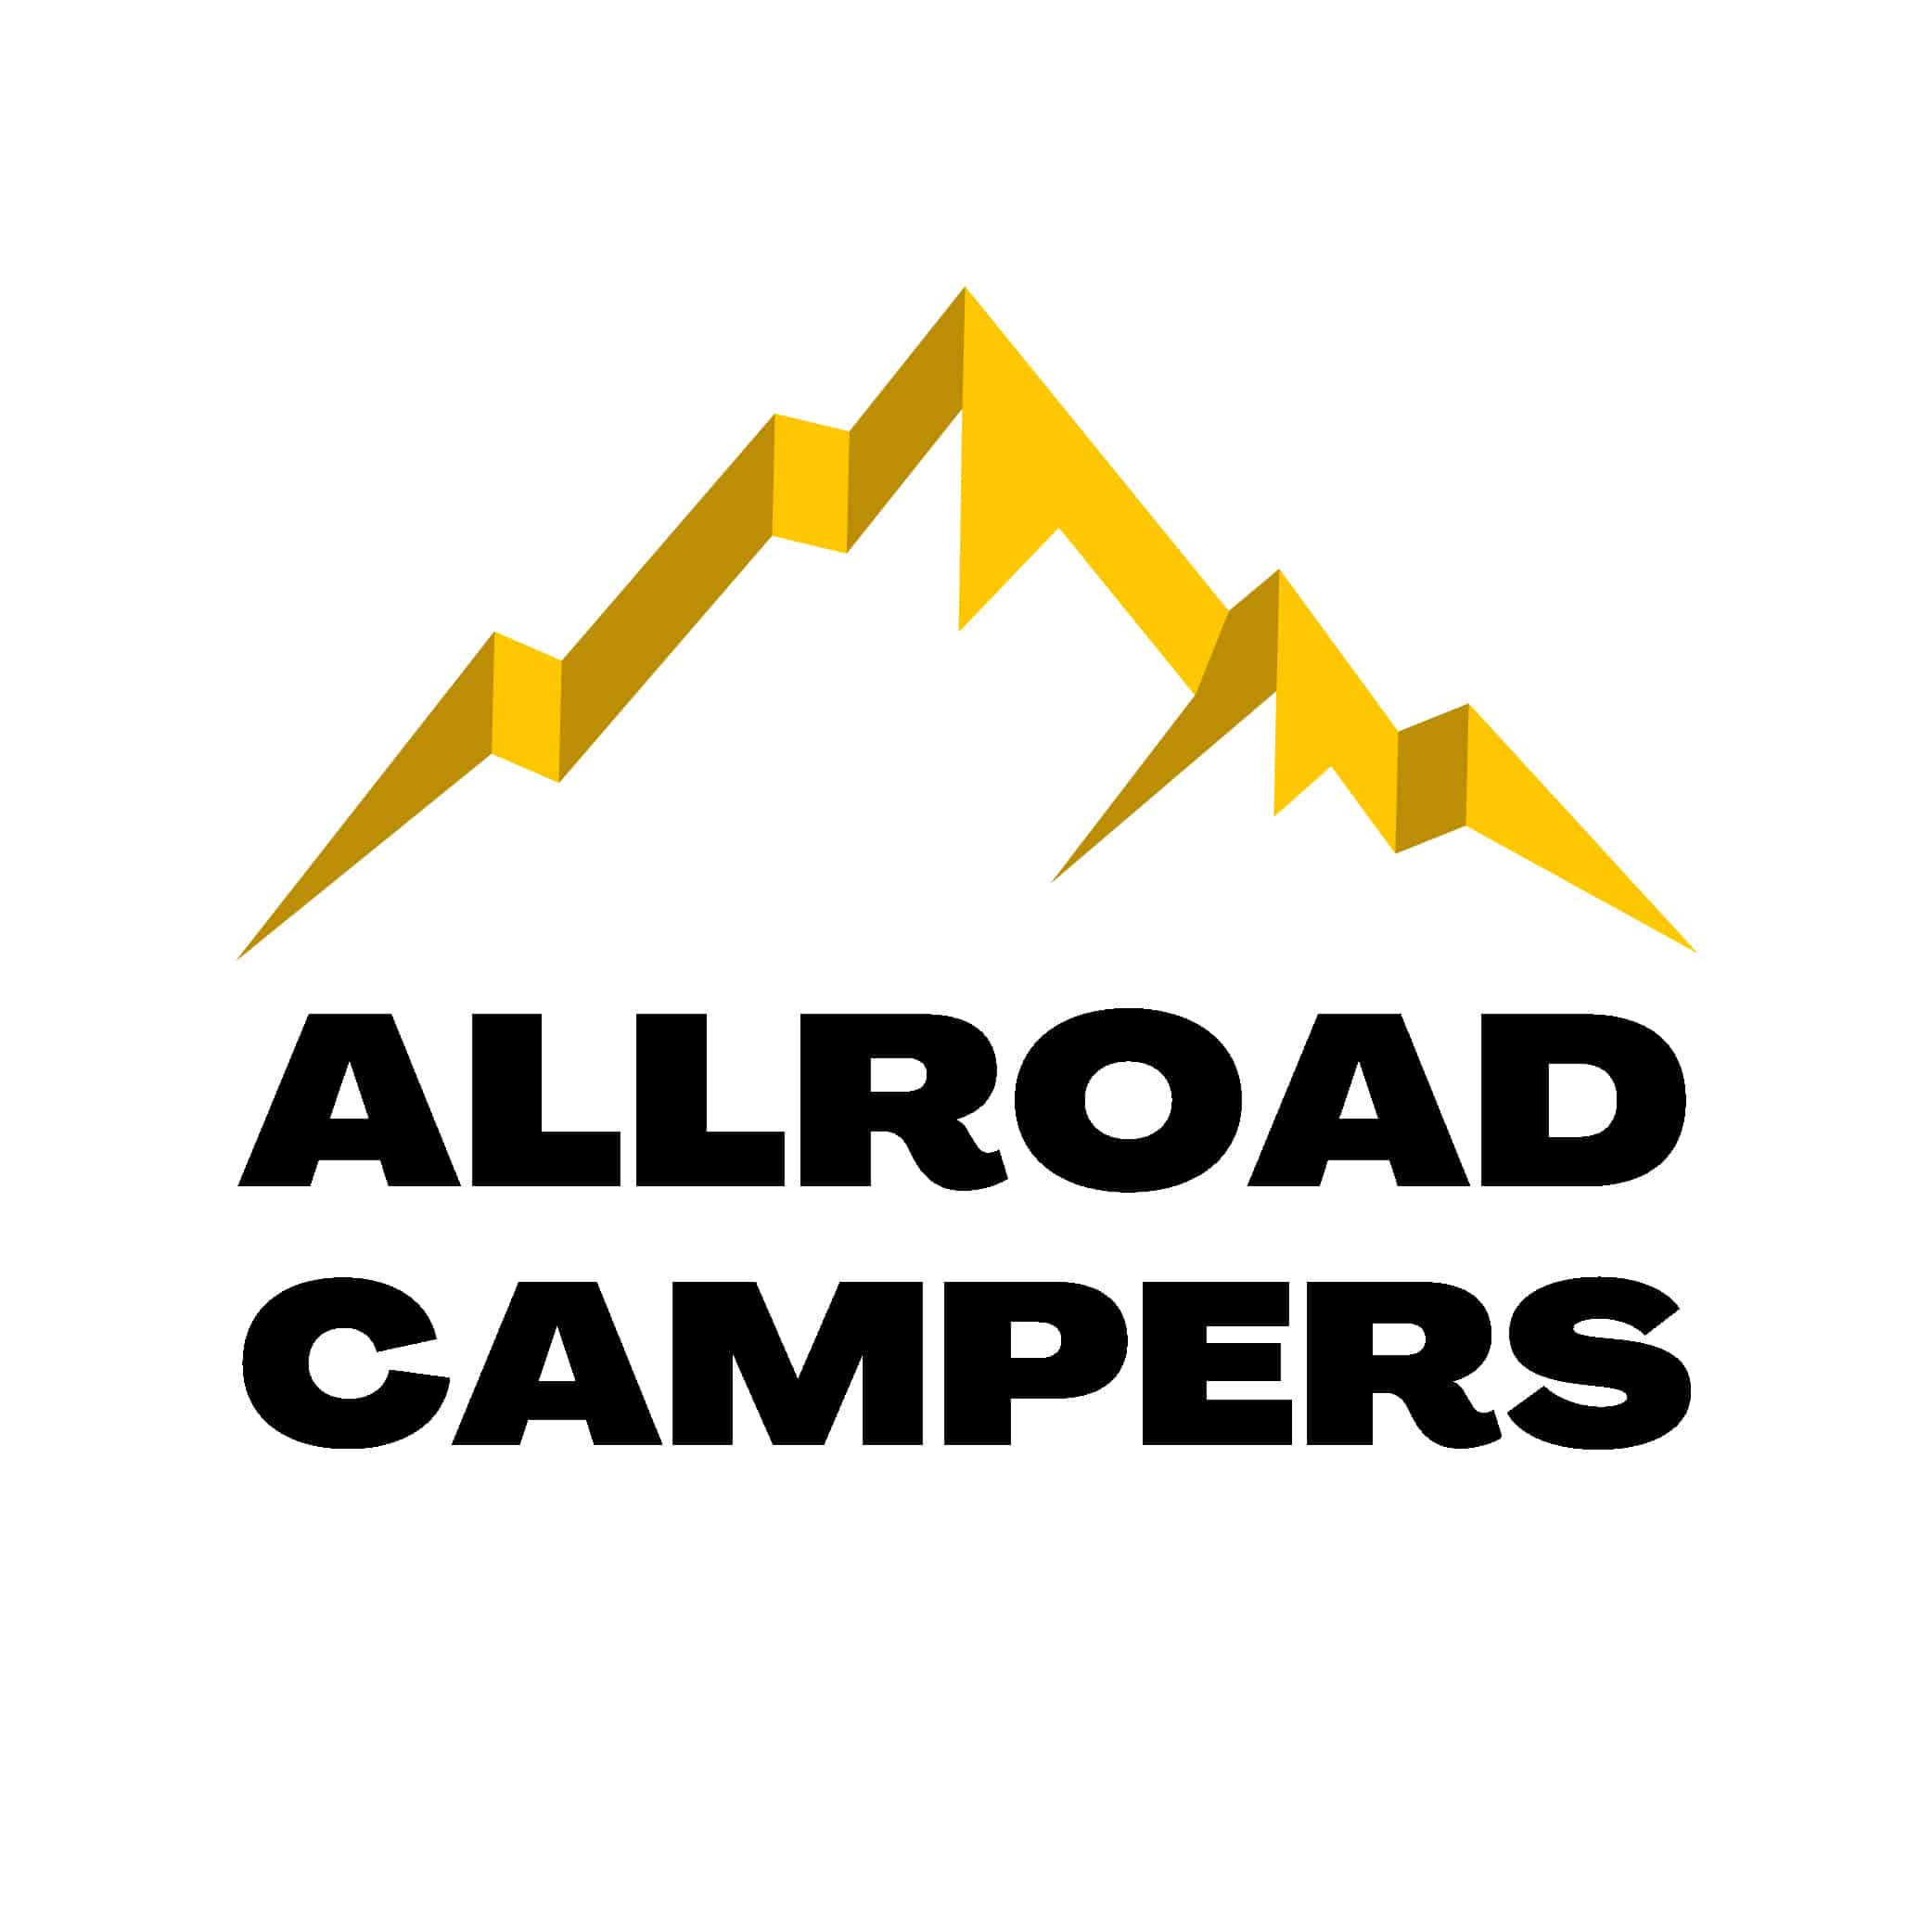 (c) Allroad-campers.eu